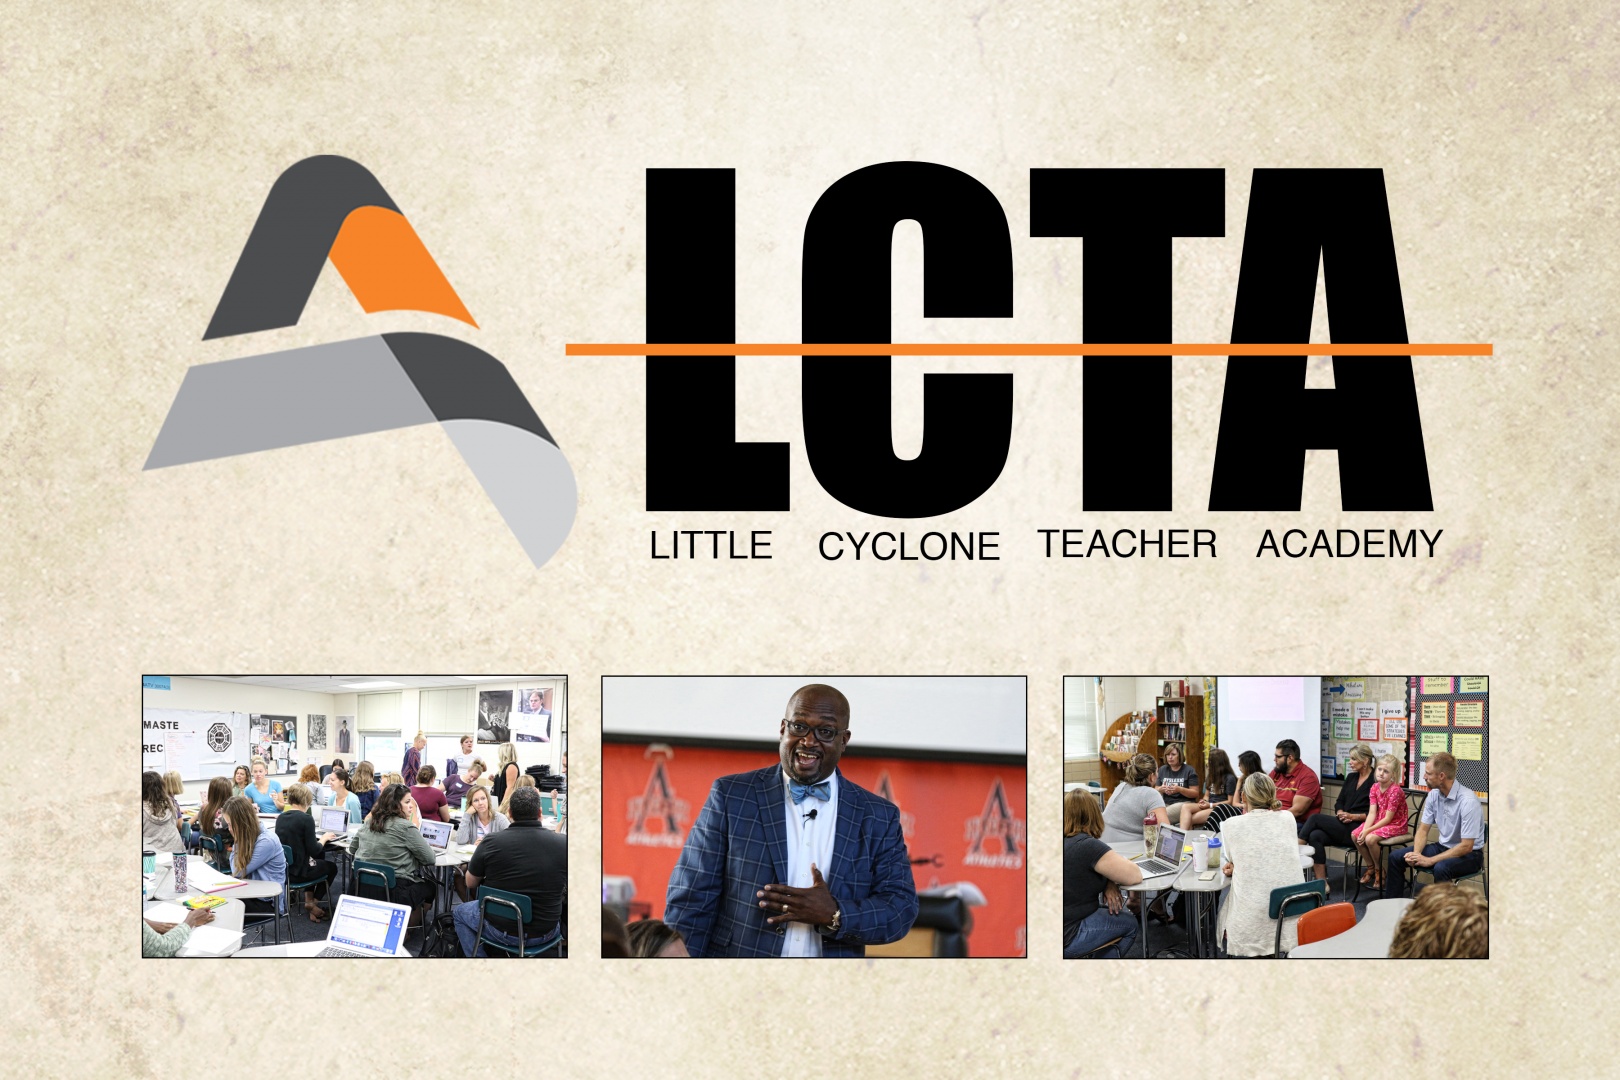 Little Cyclone Teacher Academy